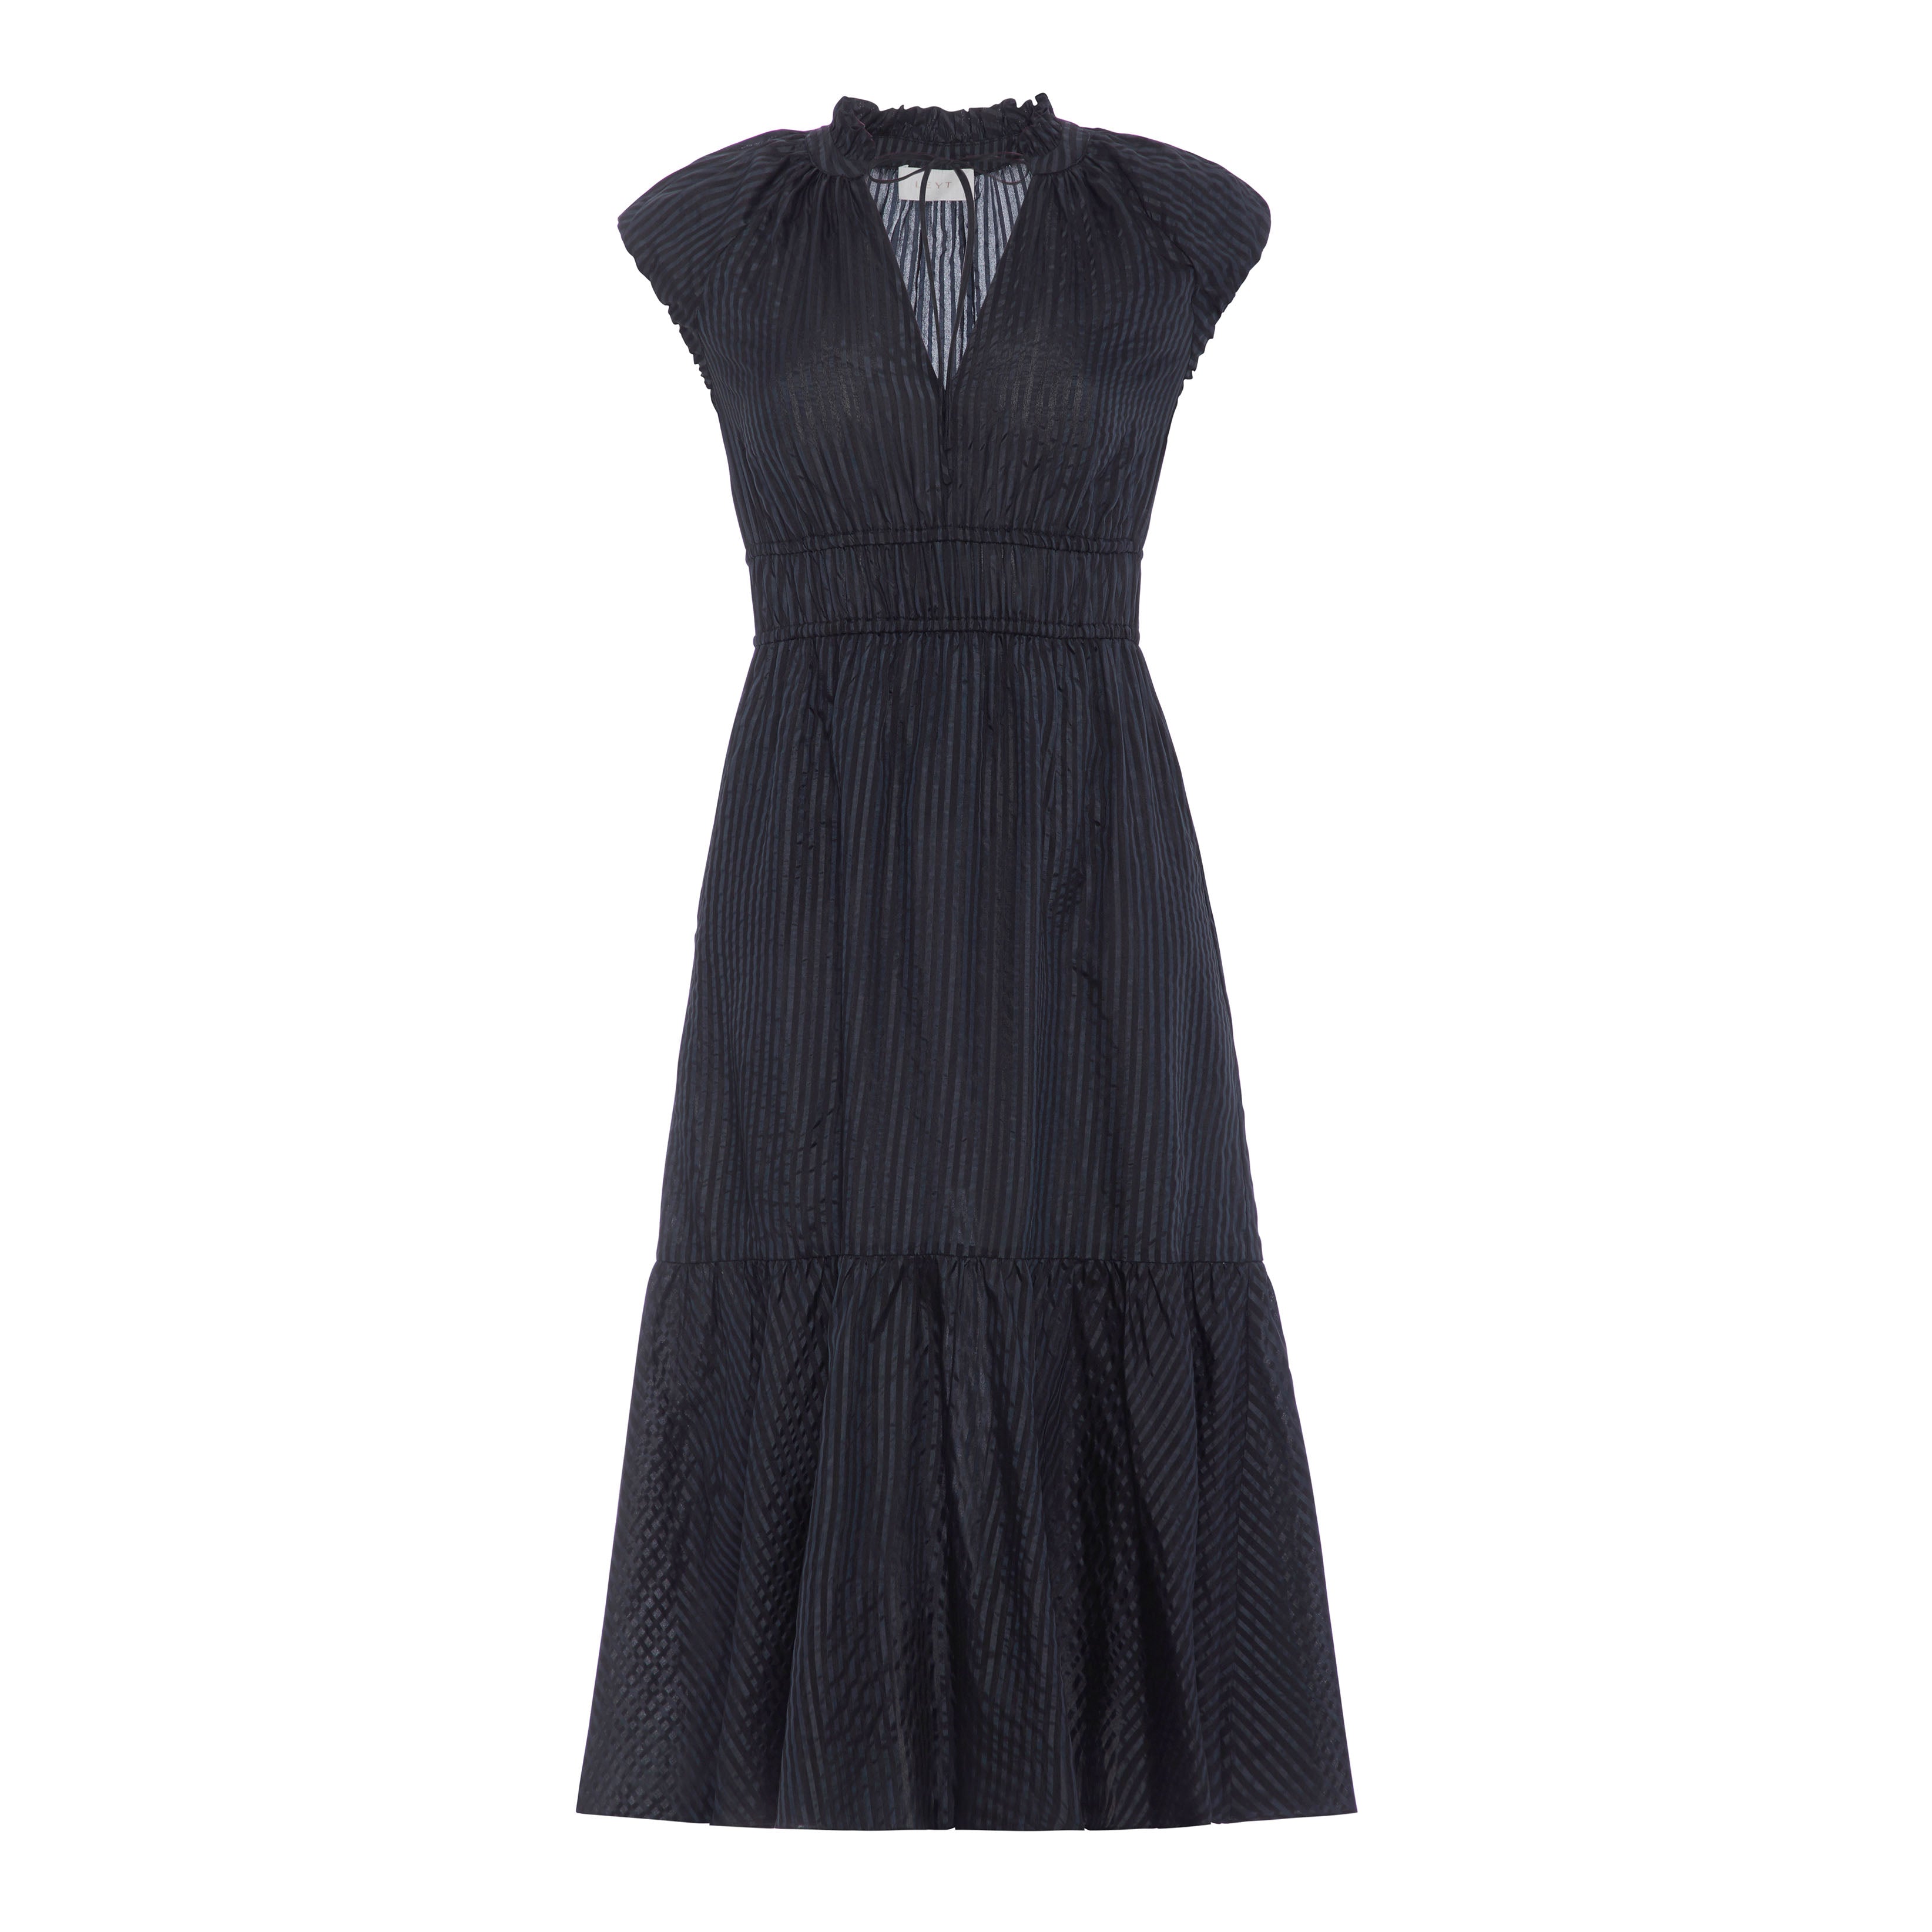 odette-dress-black-cotton-silk-blend-front-3